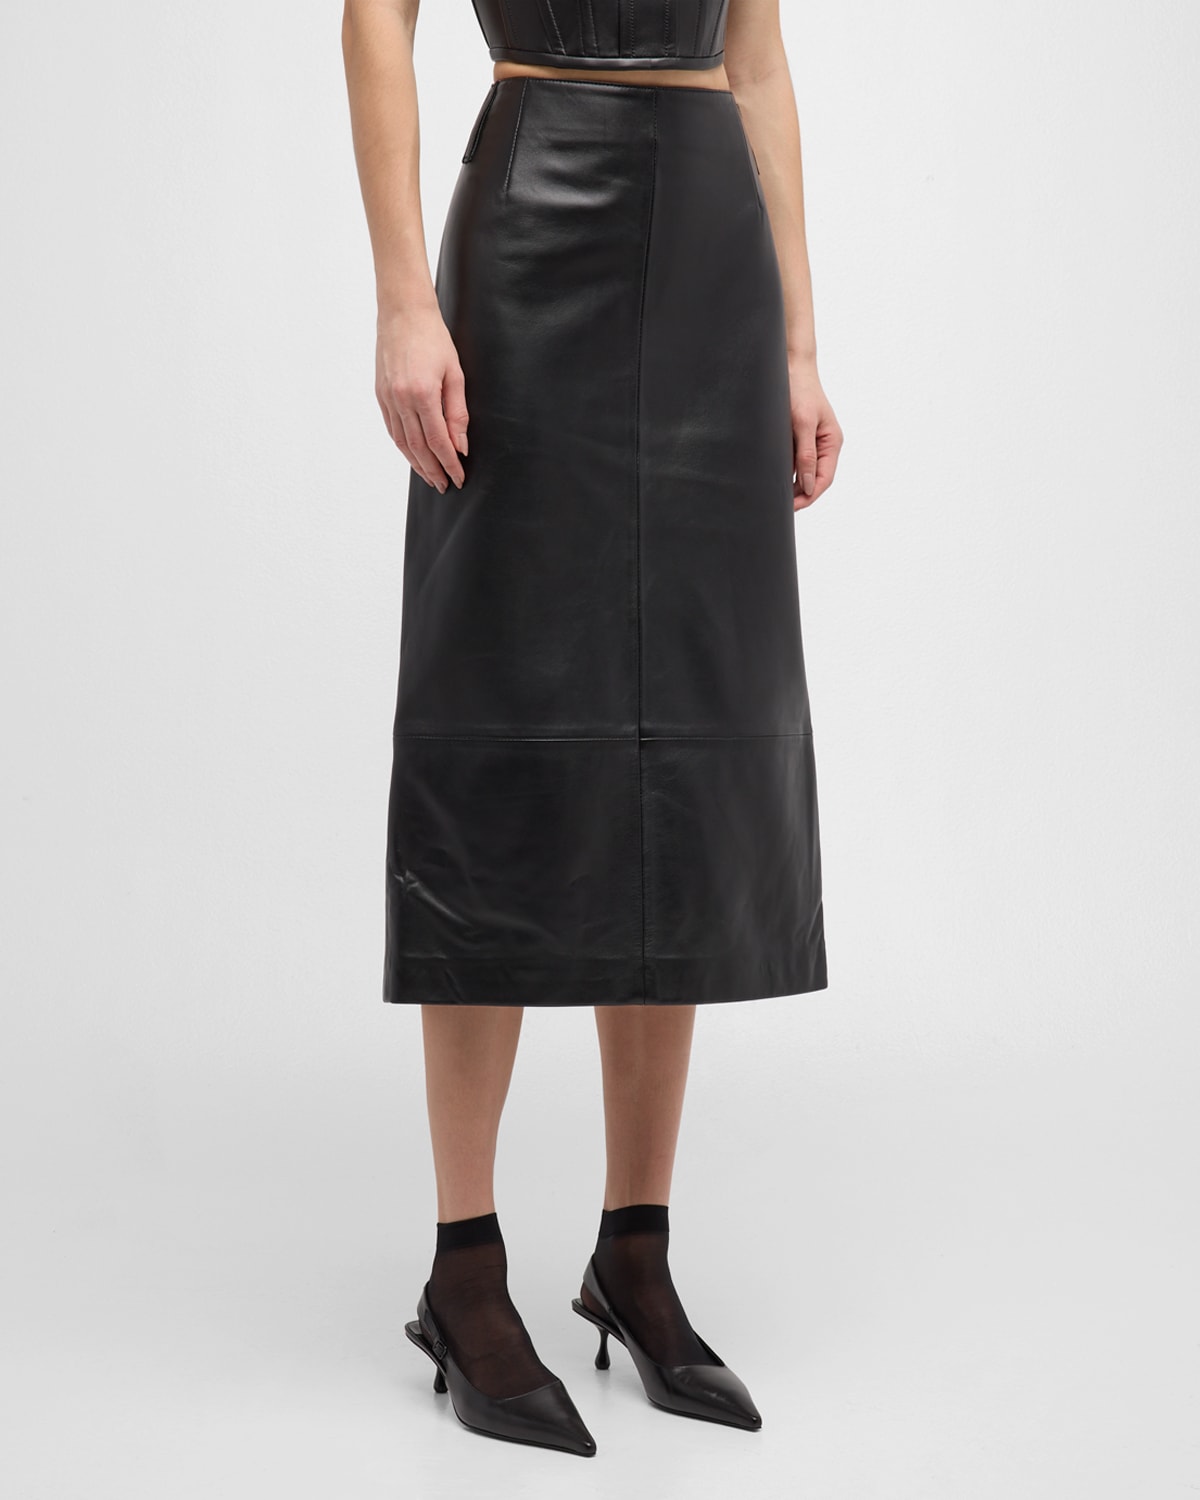 Leather Slim Pencil Midi Skirt